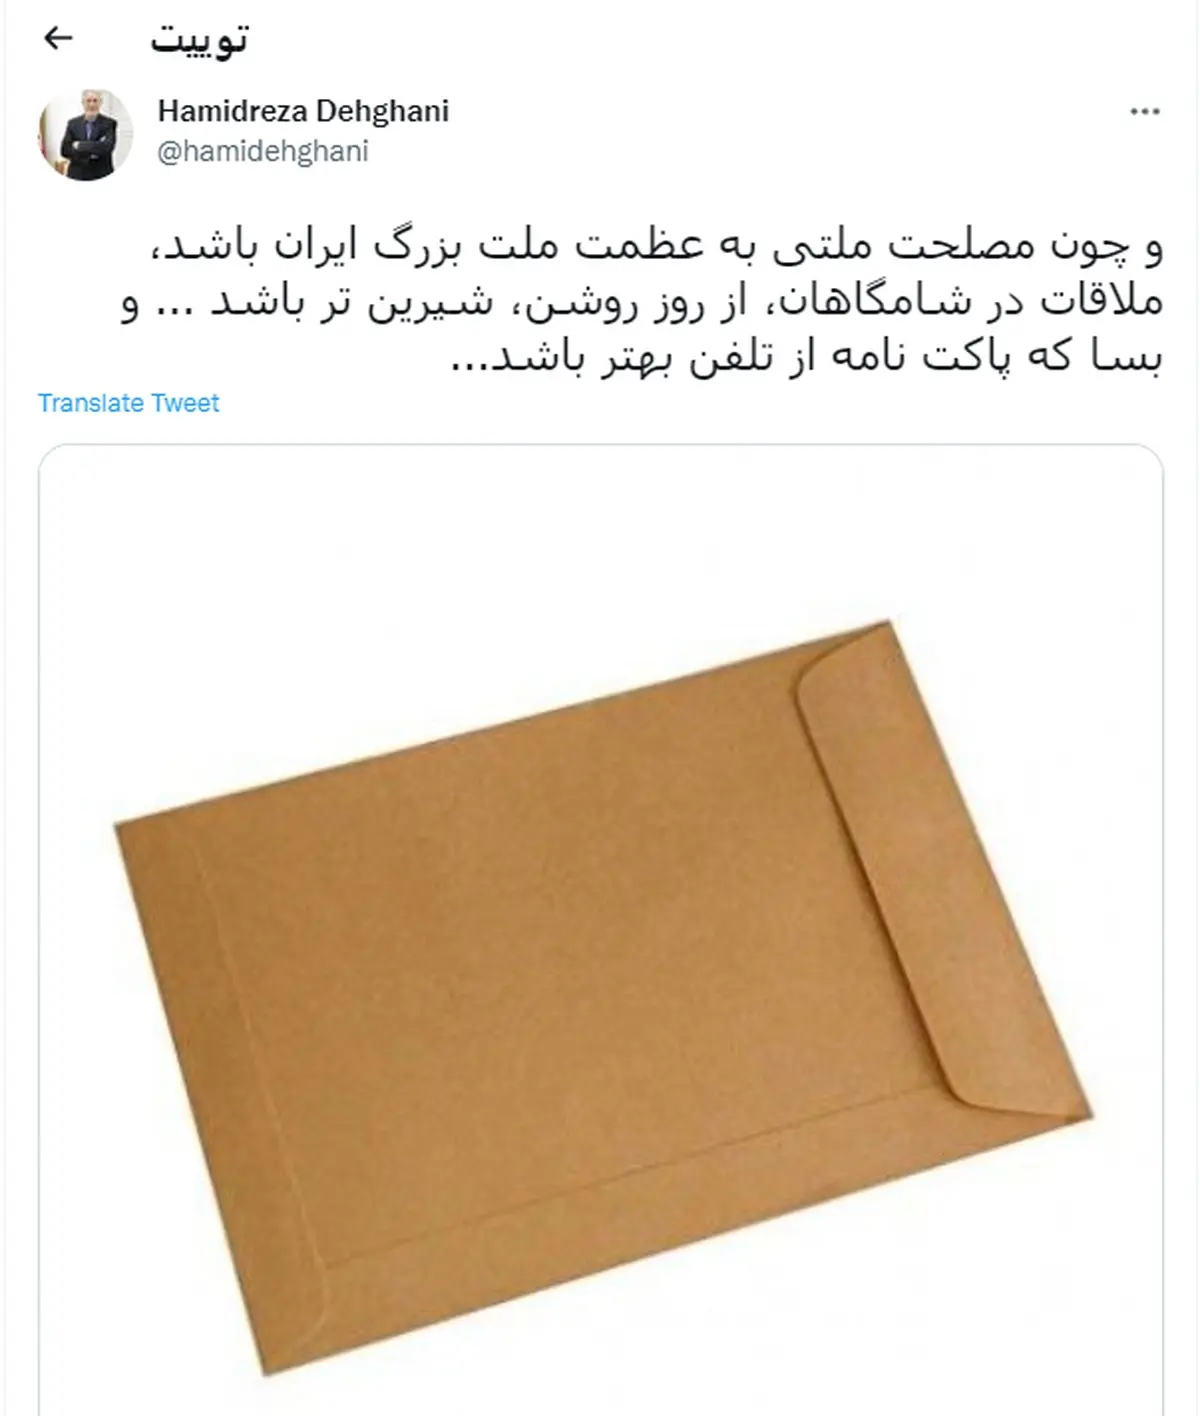 واکنش سفیر ایران در قطر به ارسال پاسخِ اتحادیه اروپا: بسا که پاکت نامه از تلفن بهتر باشد